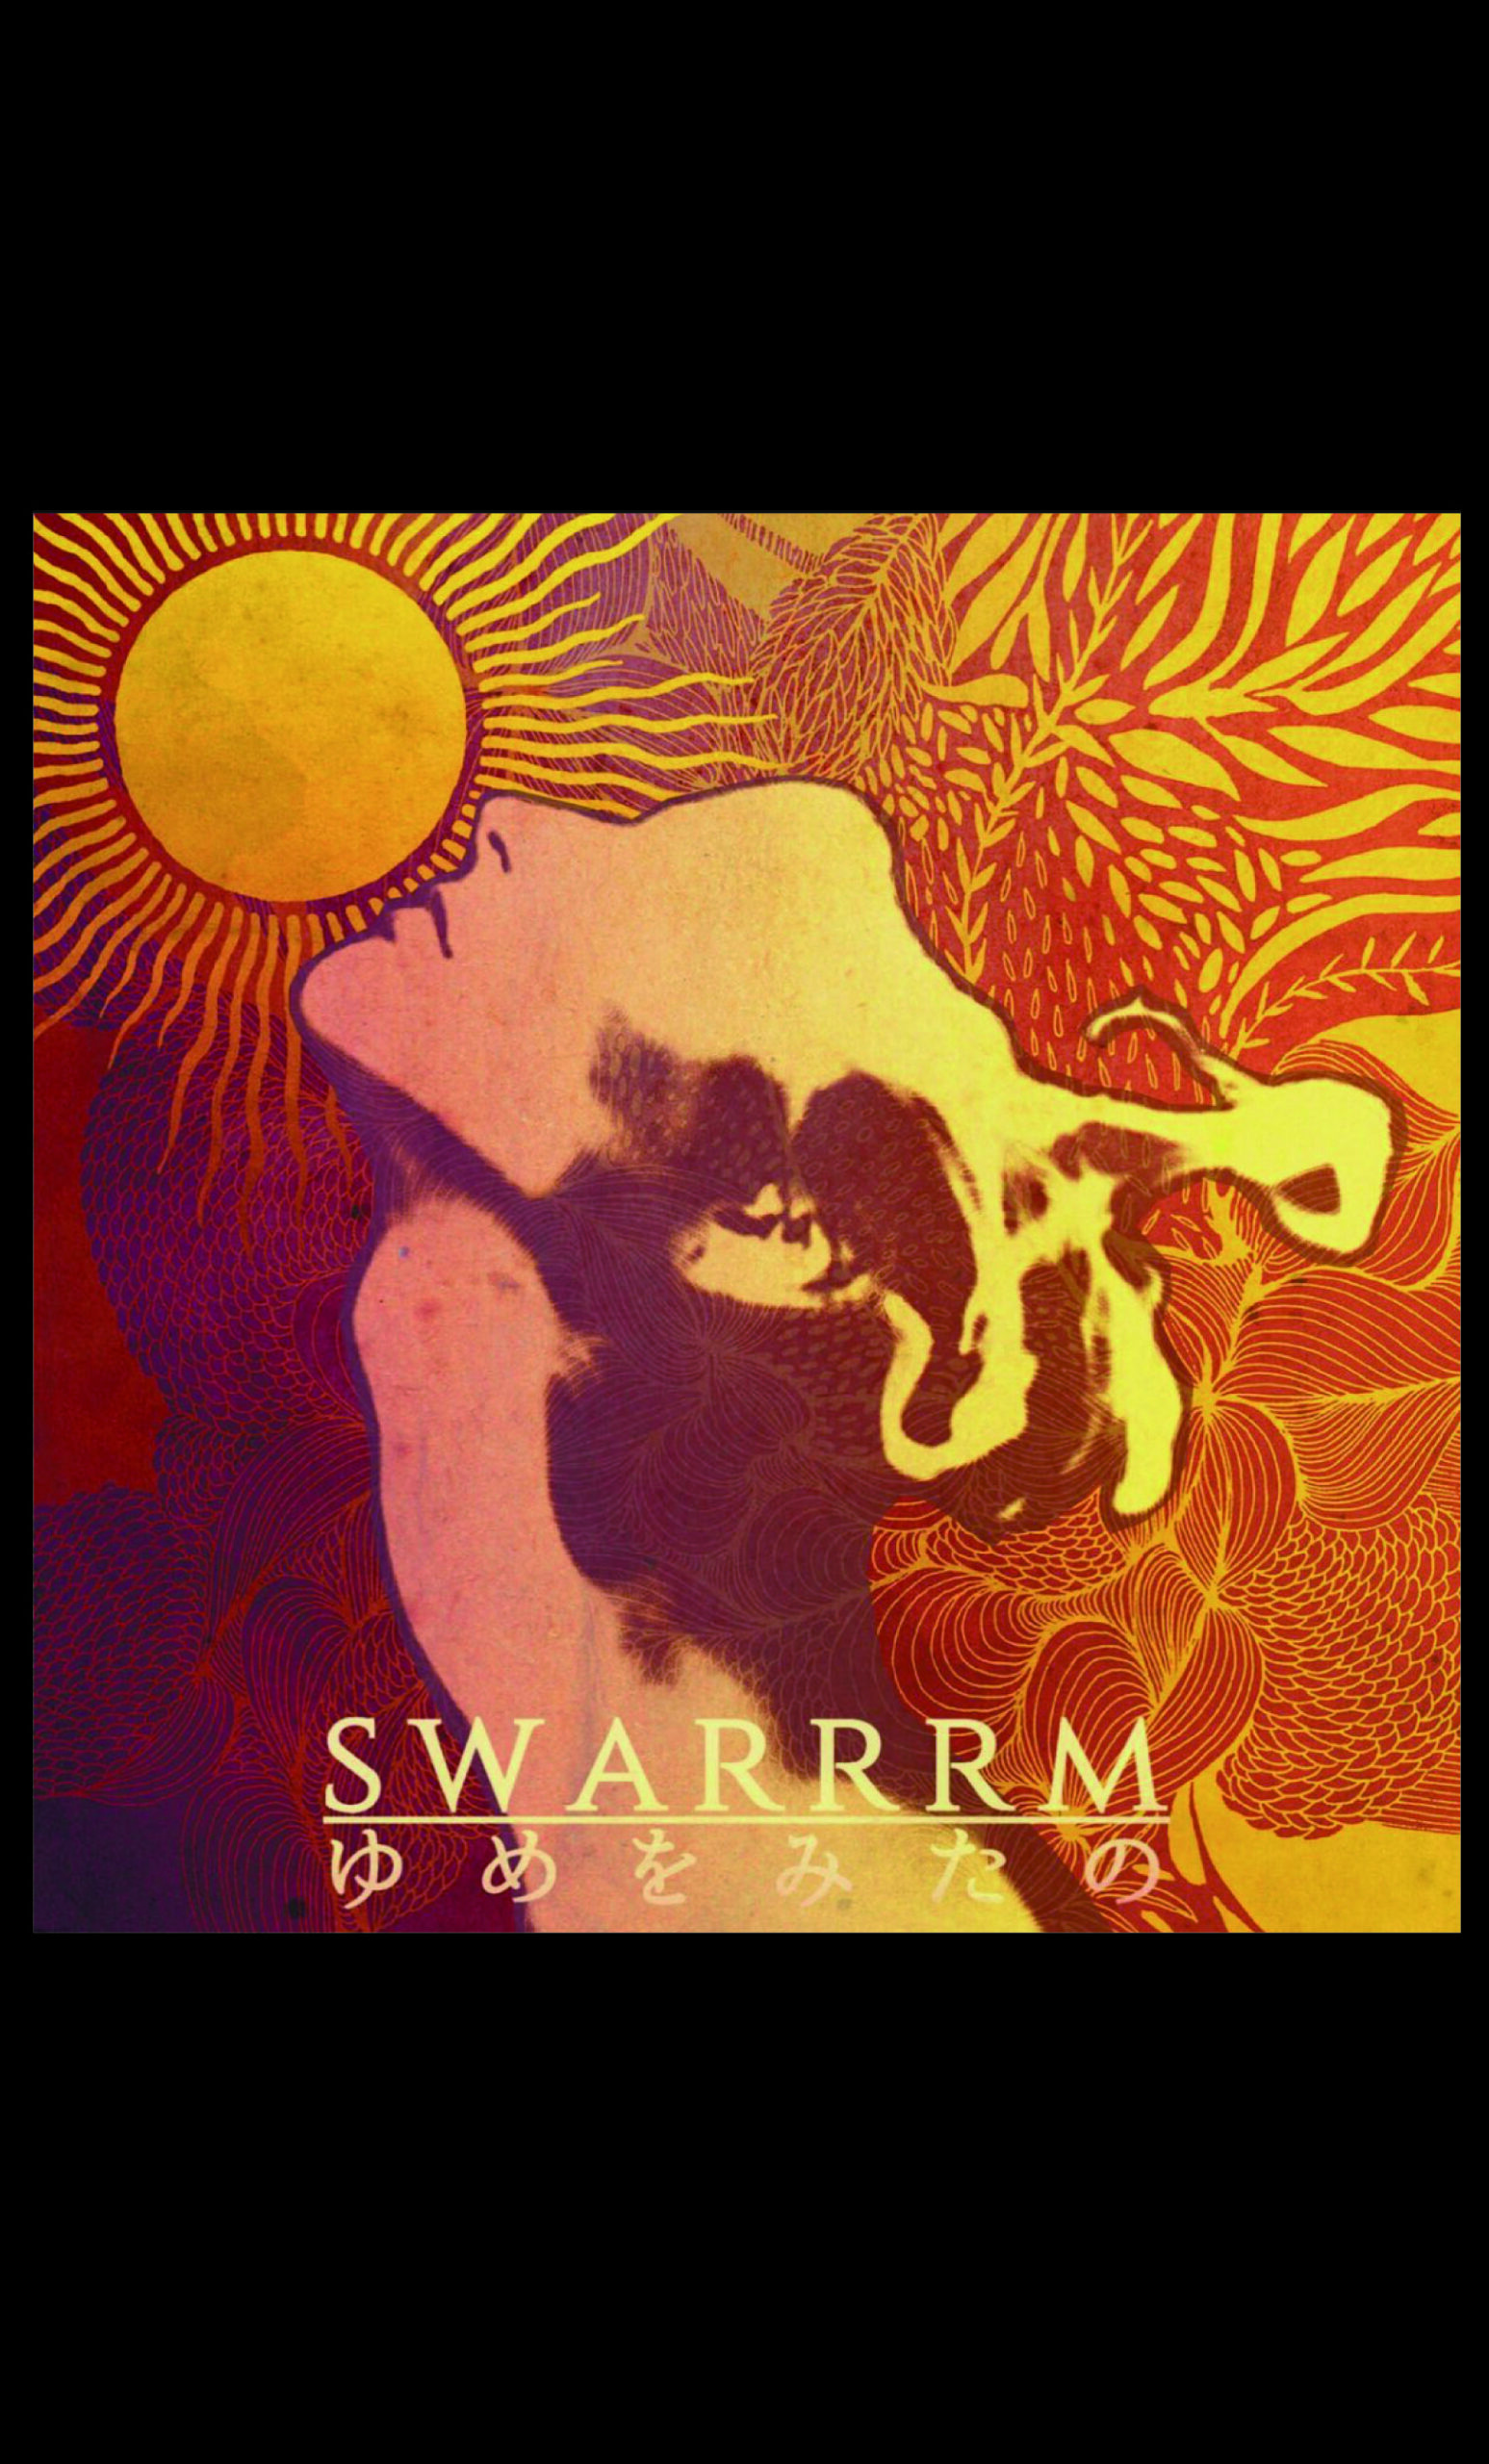 SWARRRM 「ゆめをみたの」ニューアルバム